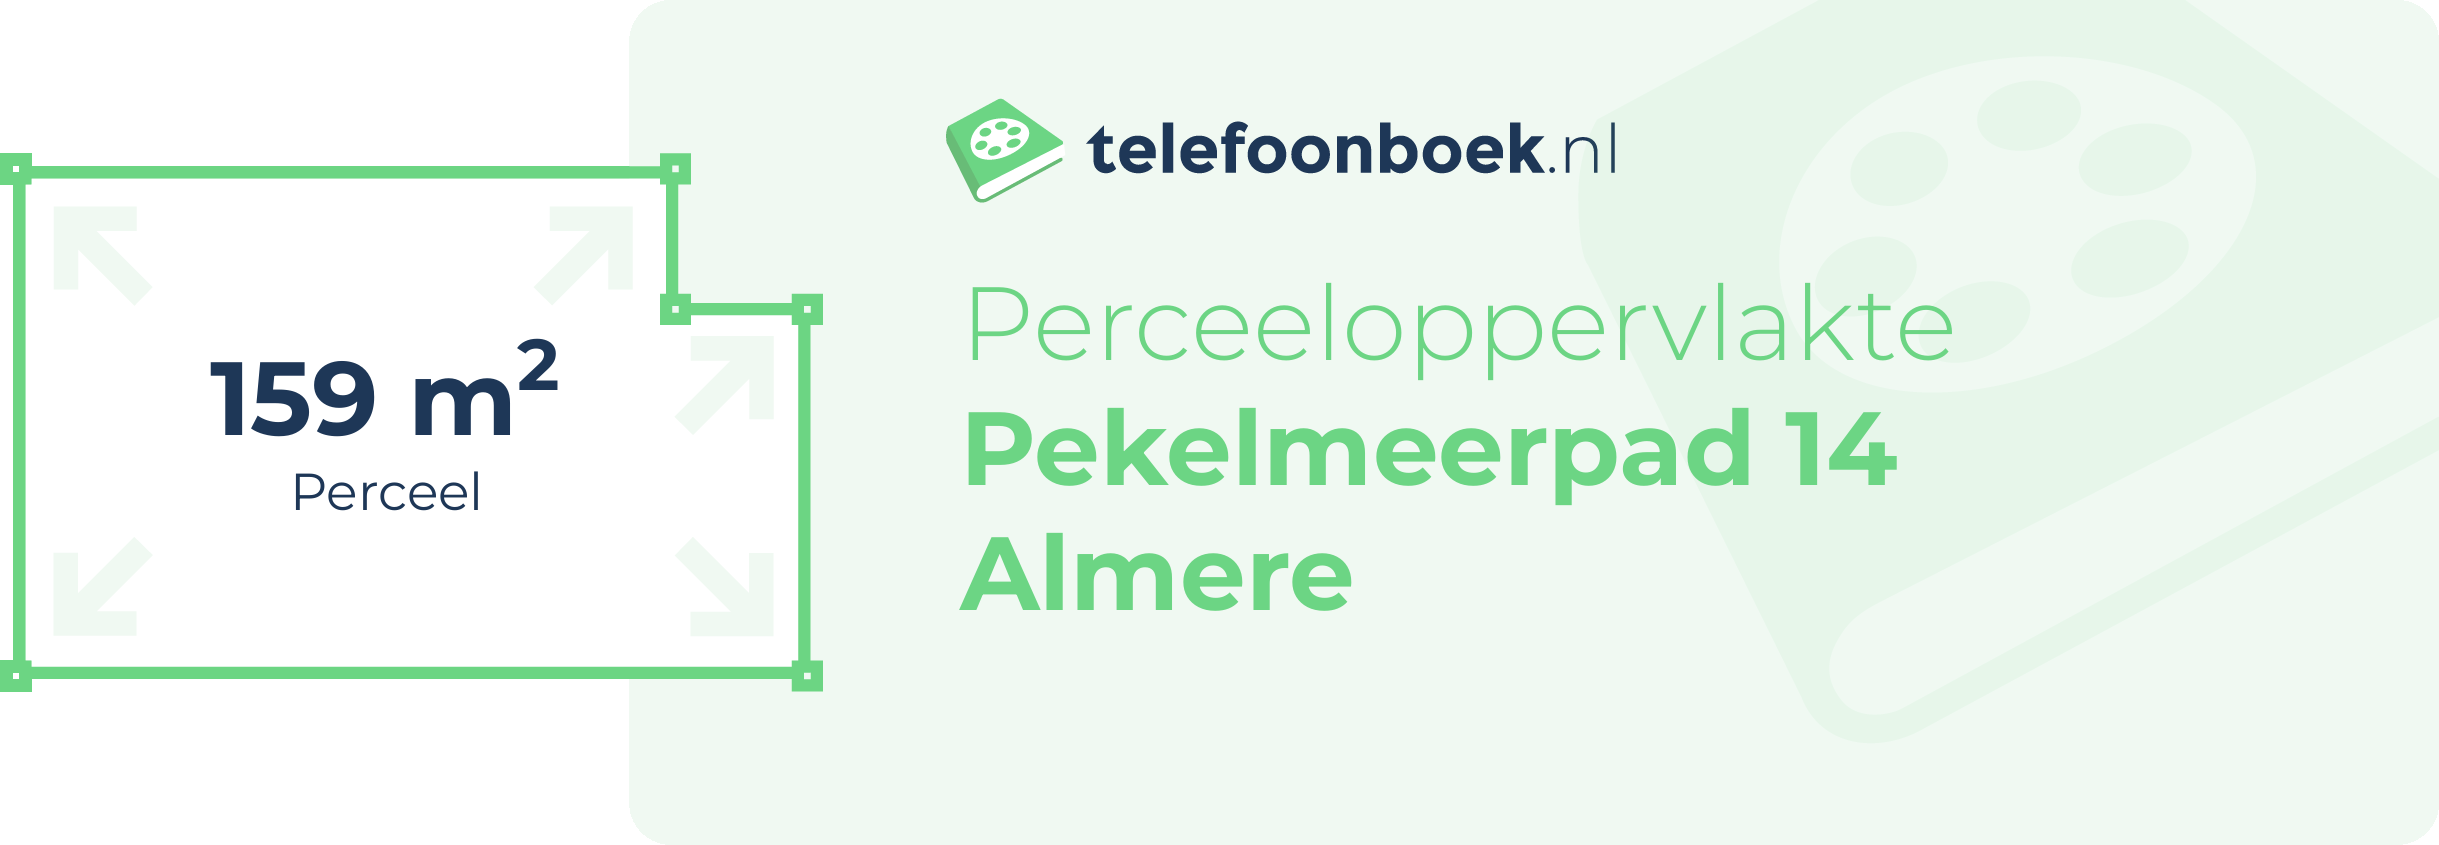 Perceeloppervlakte Pekelmeerpad 14 Almere